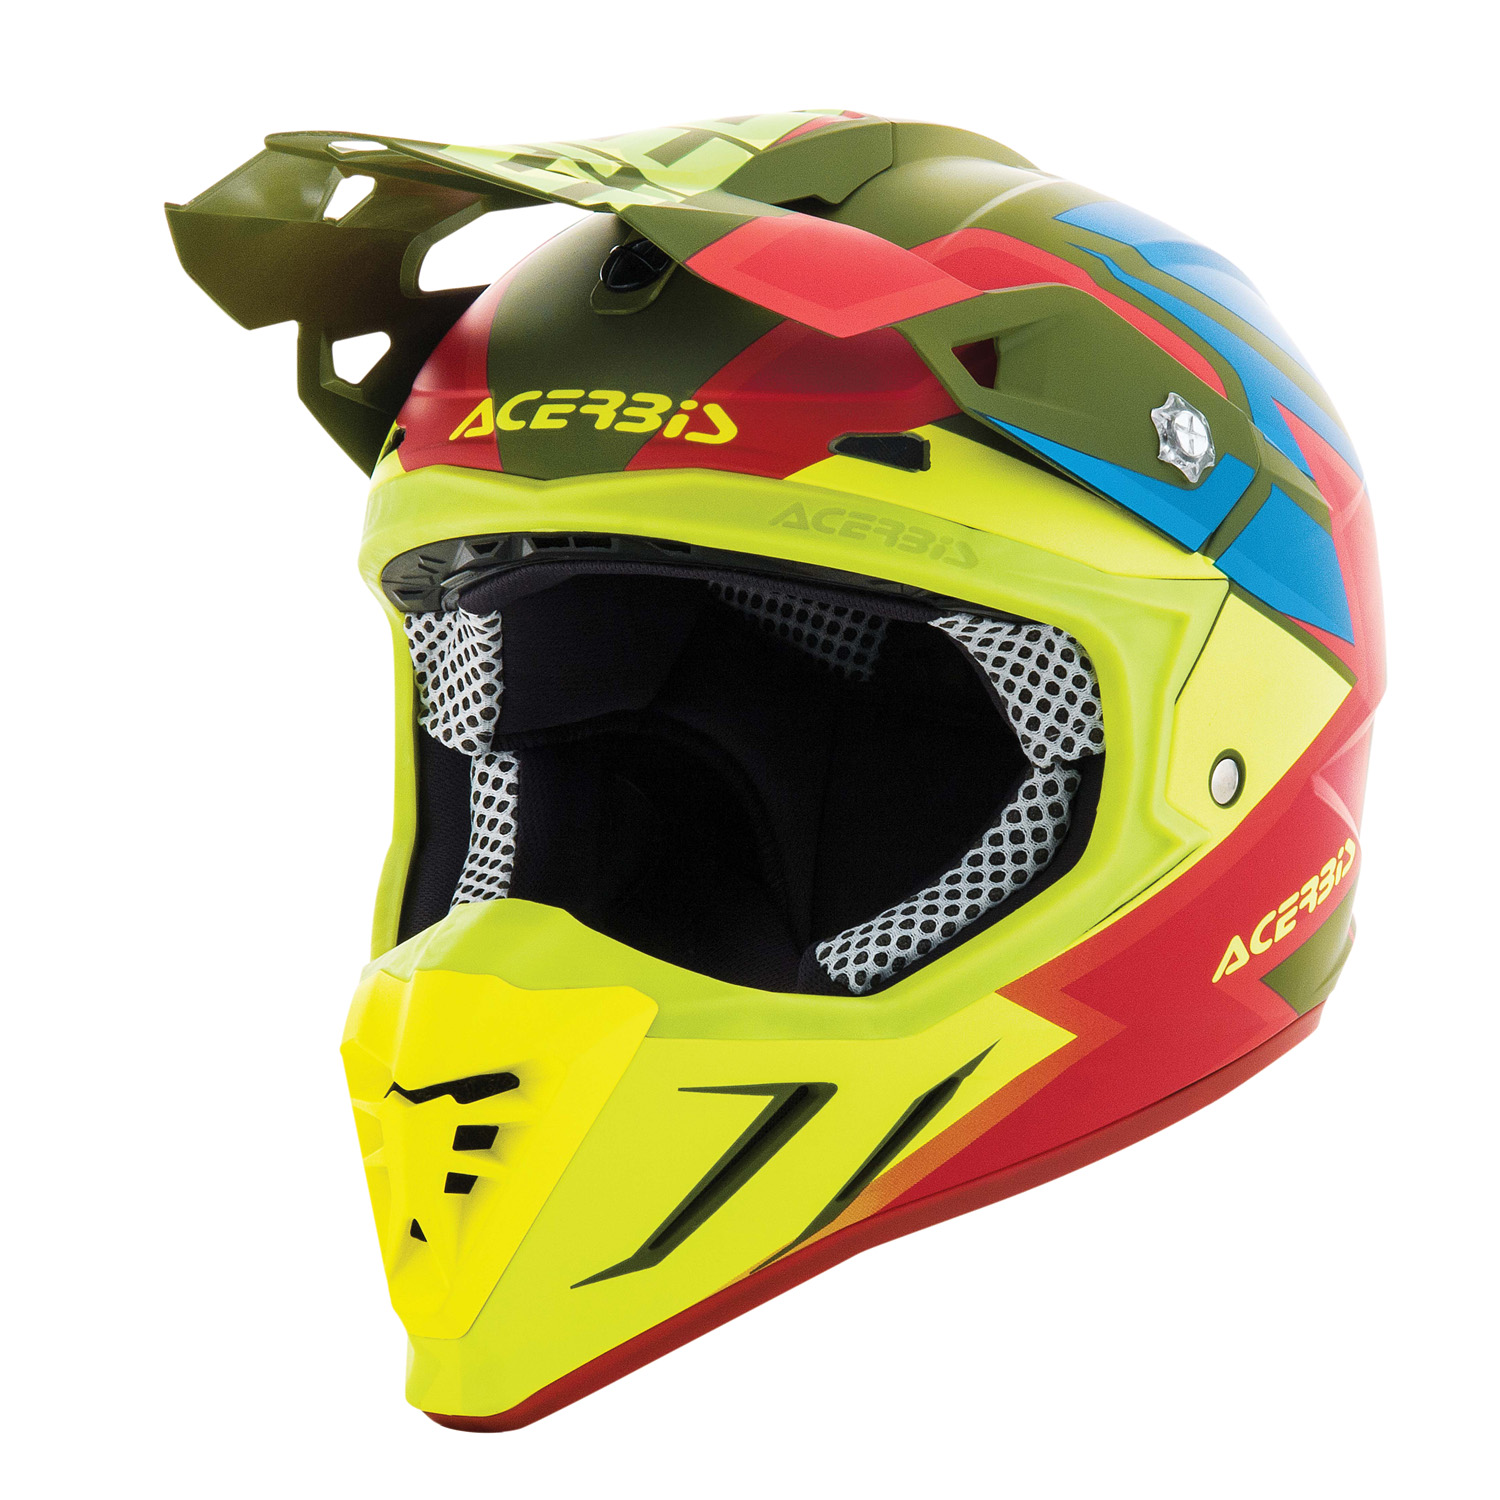 Acerbis Helmet Profile 3.0 Snapdragon - Green/Fluo Yellow